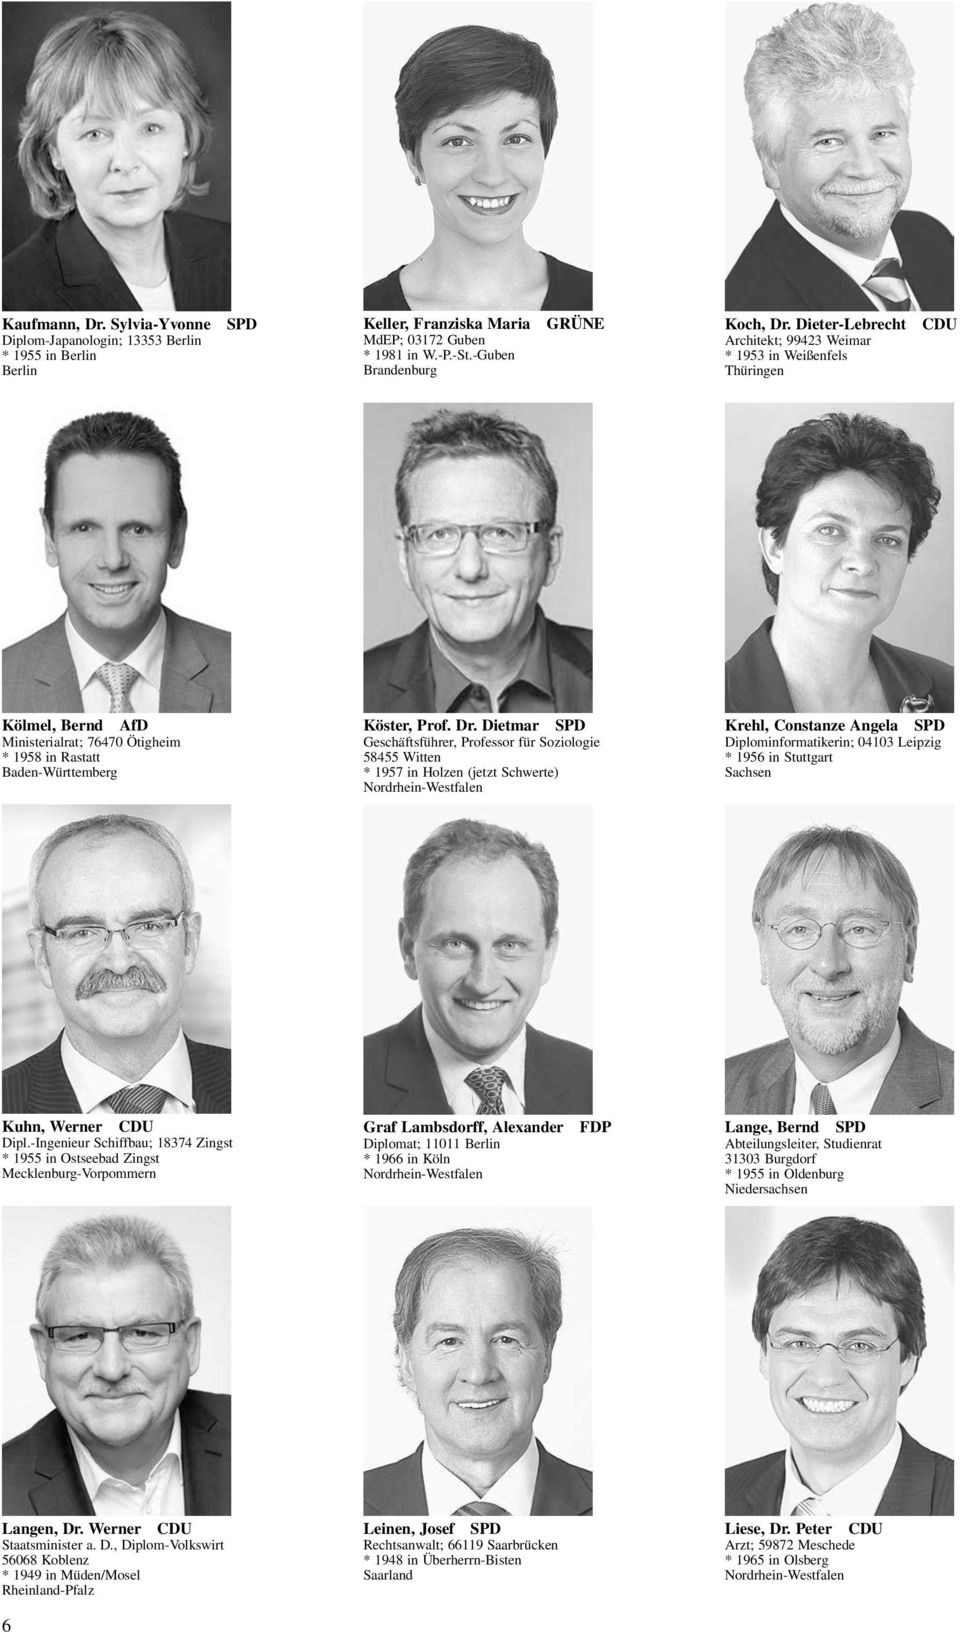 Dietmar SPD Geschäftsführer, Professor für Soziologie 58455 Witten * 1957 in Holzen (jetzt Schwerte) Krehl, Constanze Angela SPD Diplominformatikerin; 04103 Leipzig * 1956 in Stuttgart Sachsen Kuhn,